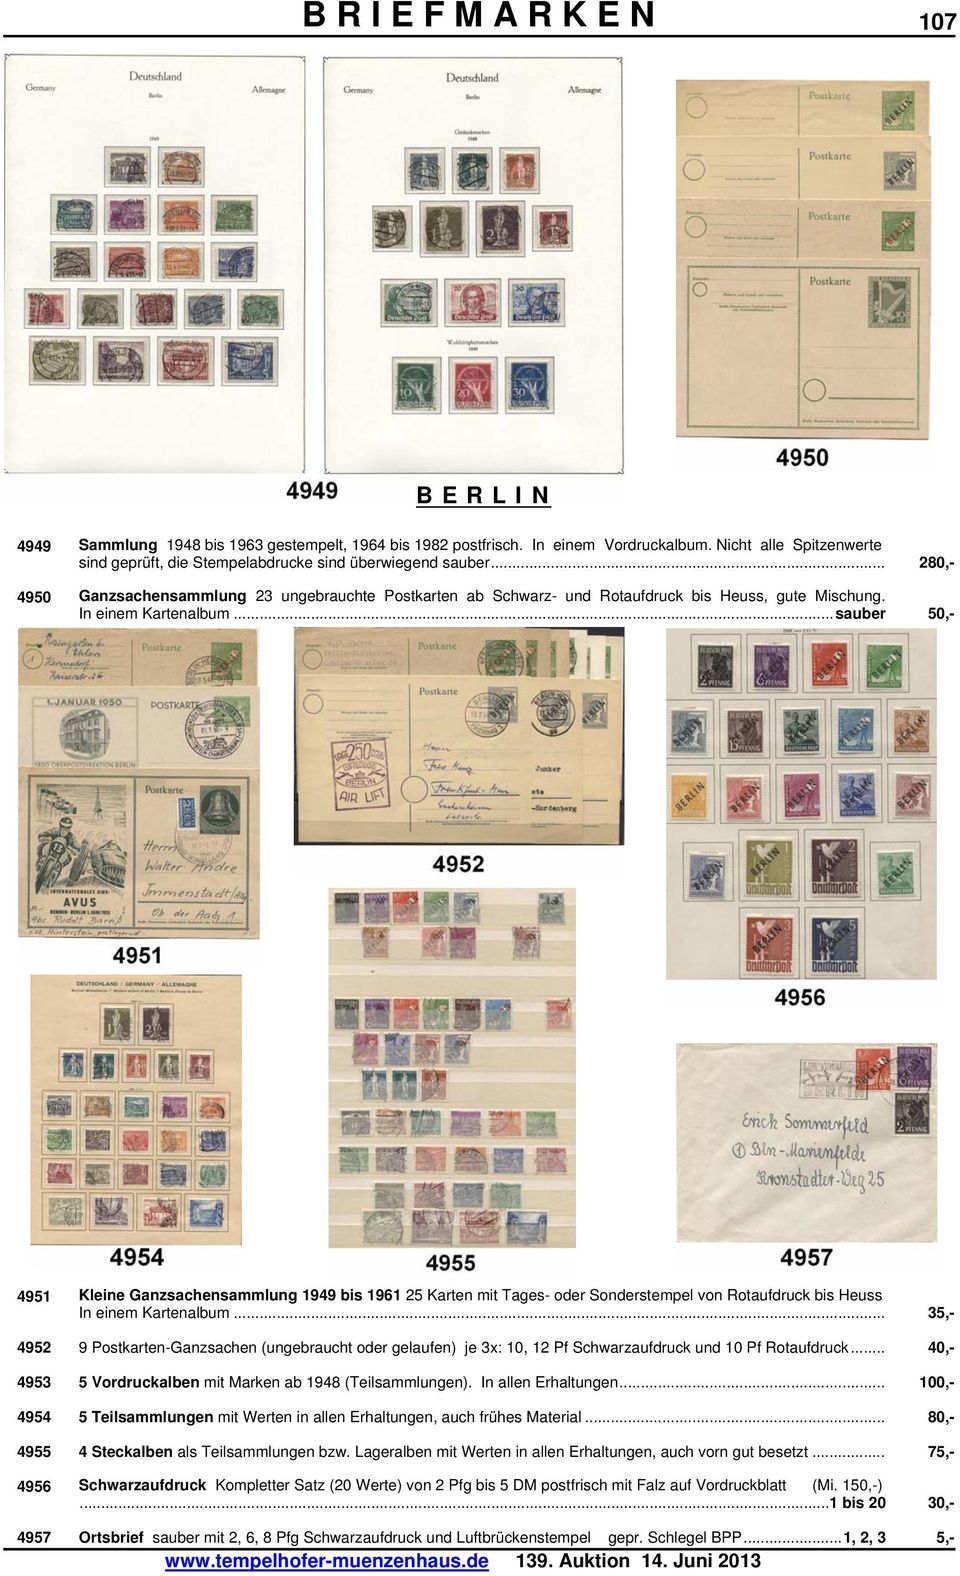 ..sauber 50,- 4951 Kleine Ganzsachensammlung 1949 bis 1961 25 Karten mit Tages- oder Sonderstempel von Rotaufdruck bis Heuss In einem Kartenalbum.